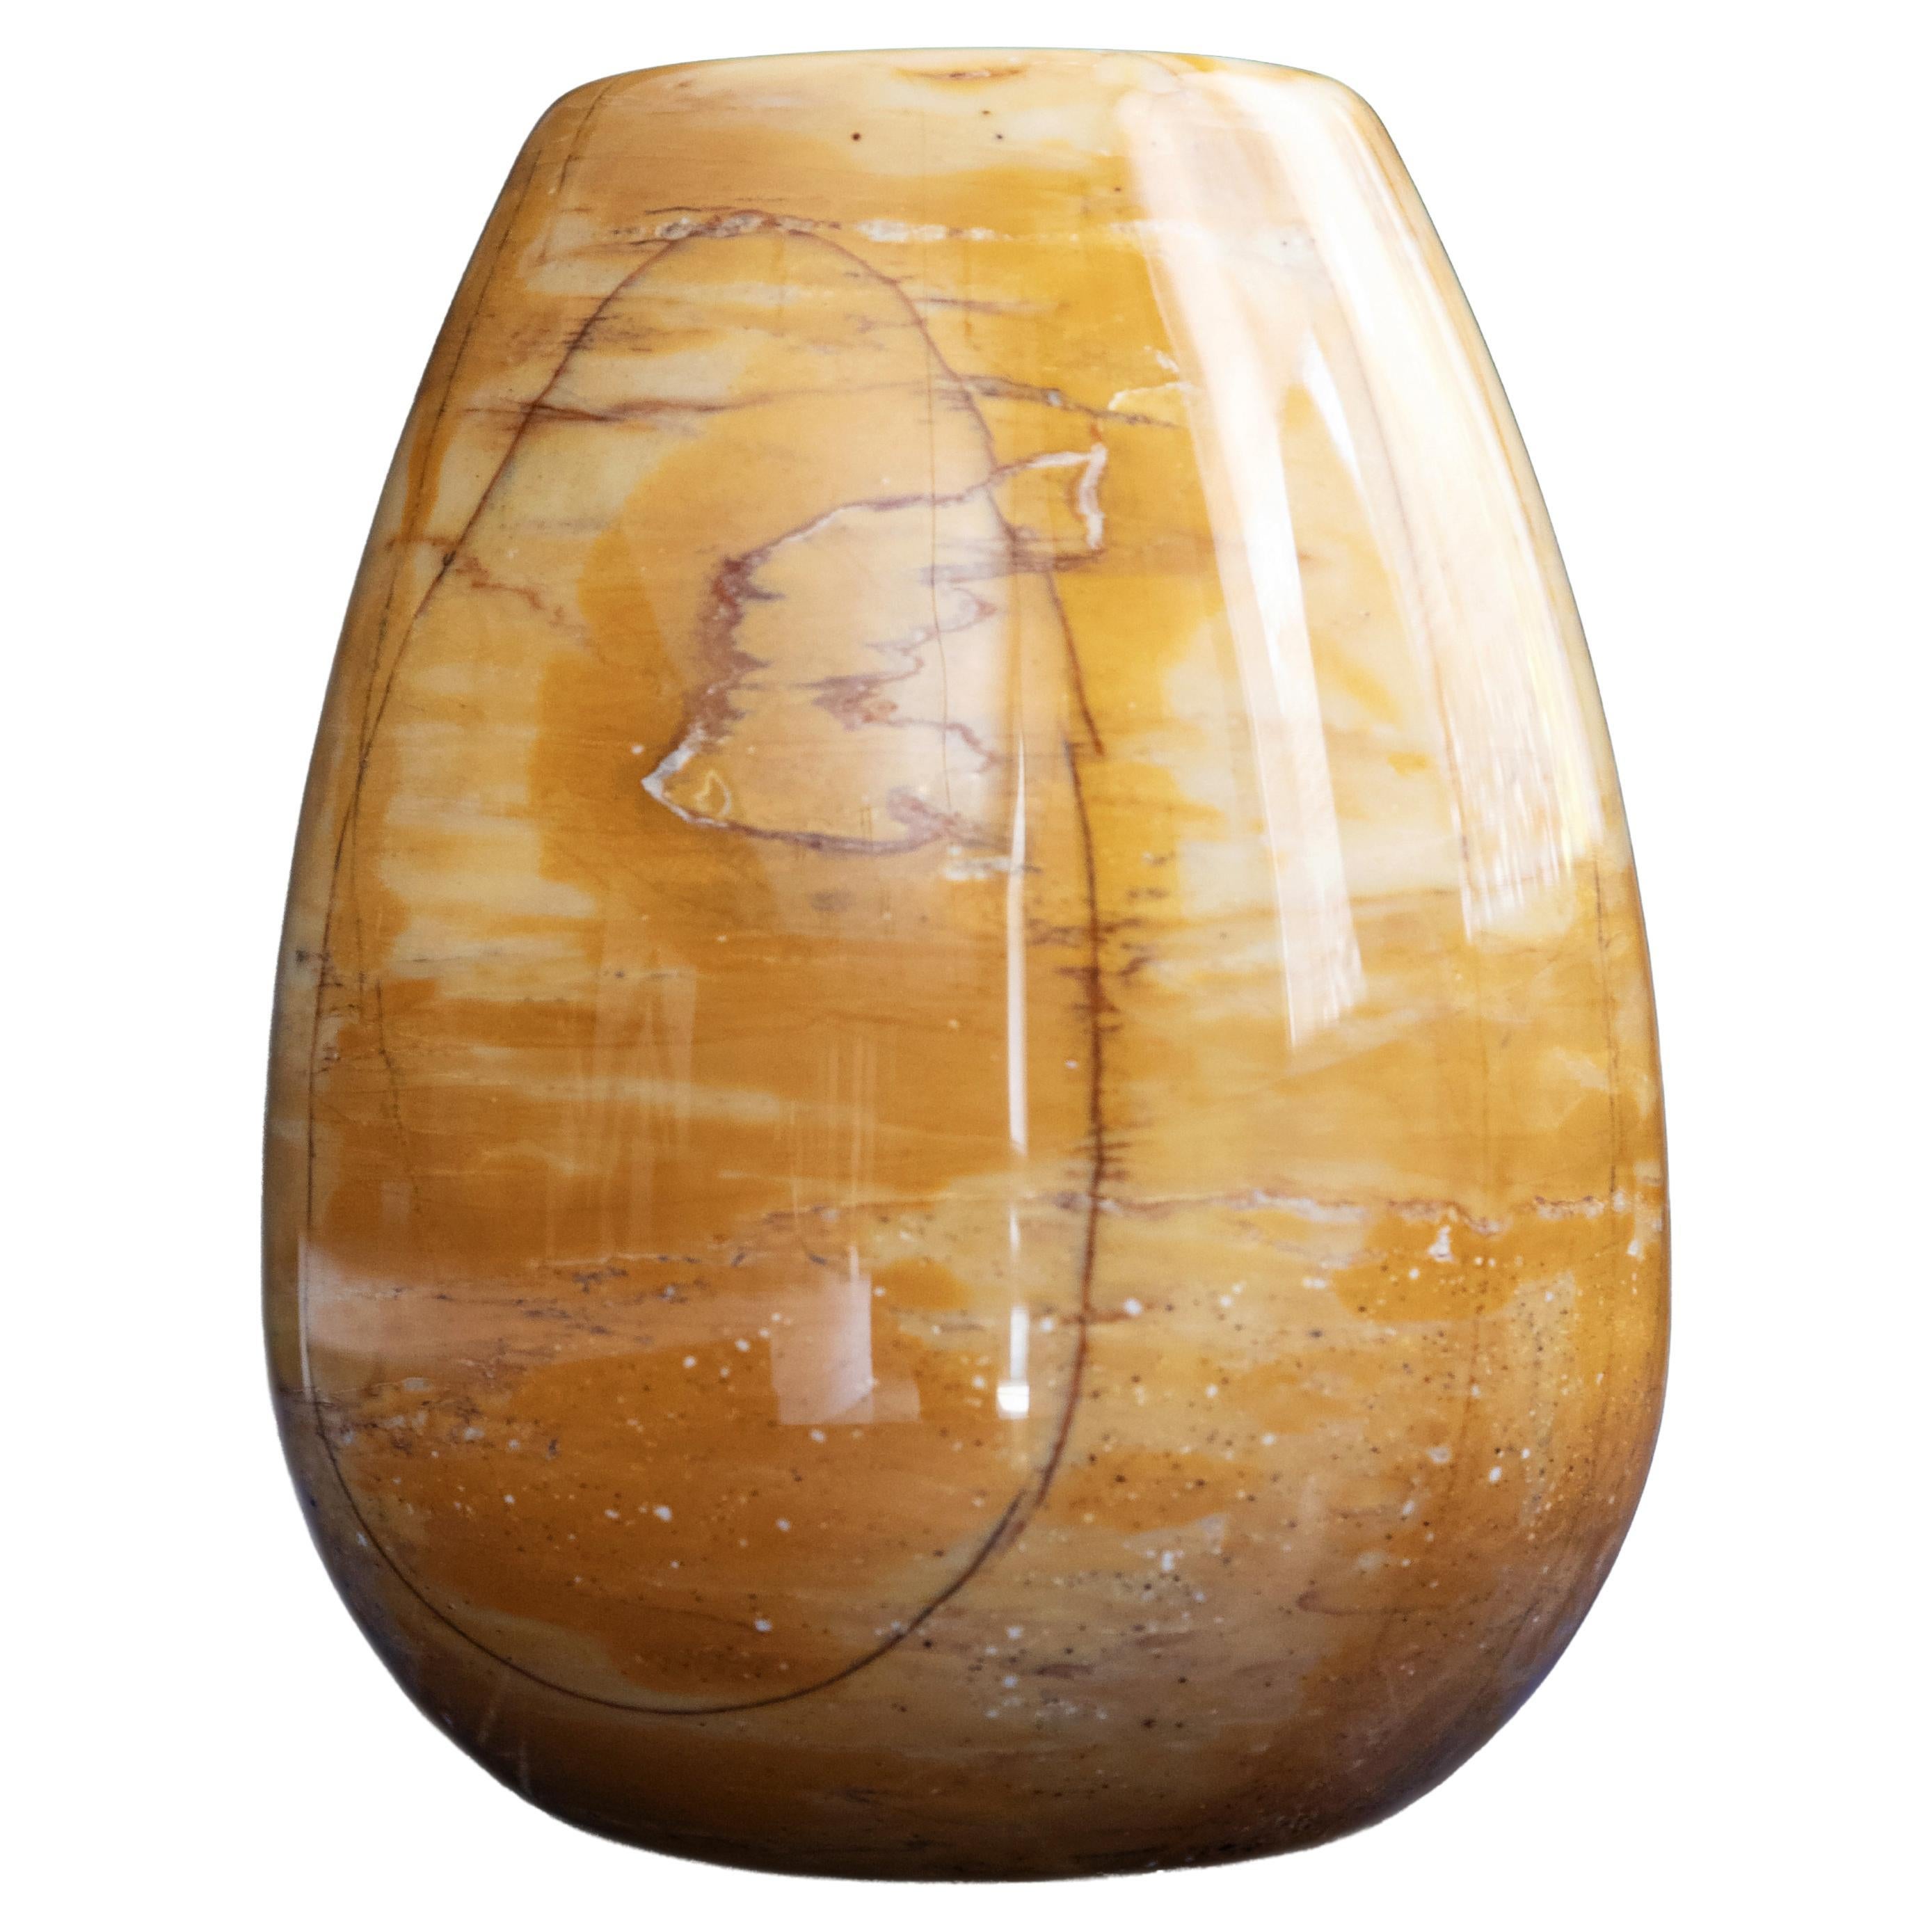 Marble Vase Giallo Siena h25 design Franco Albini - edit by Officina della Scala For Sale